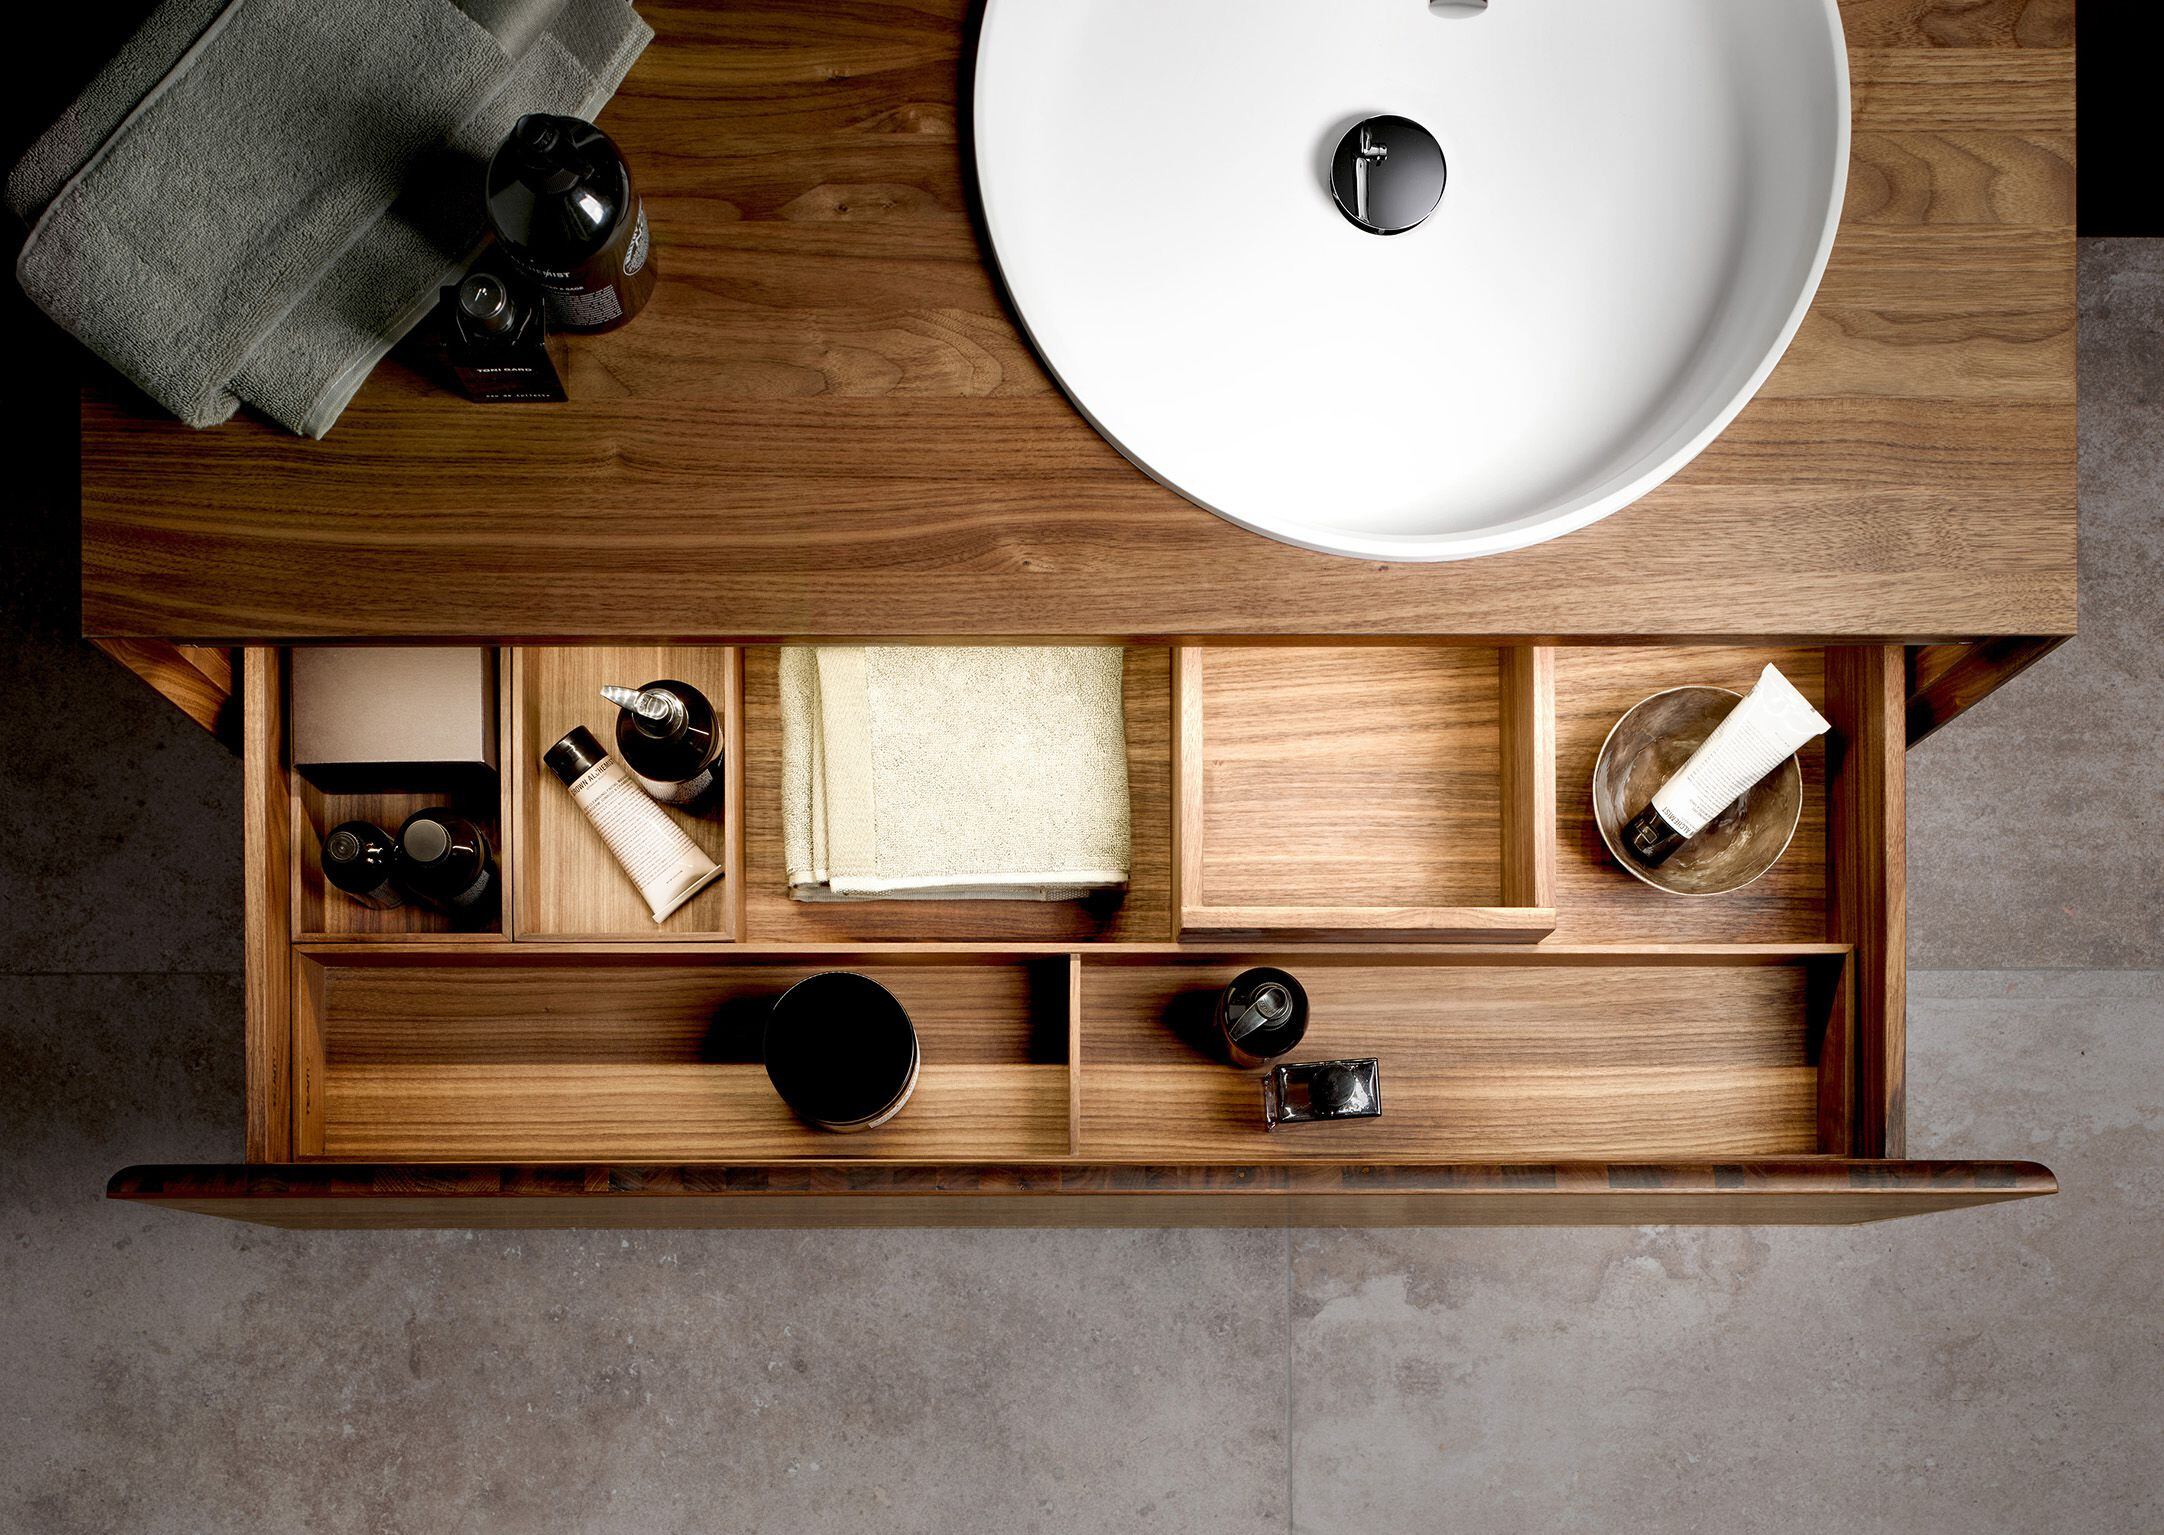 Por largo tiempo se utilizaba el enchapado para los muebles del baño, hoy se prefiere la madera maciza. (Pop up my Bathroom/DPA)